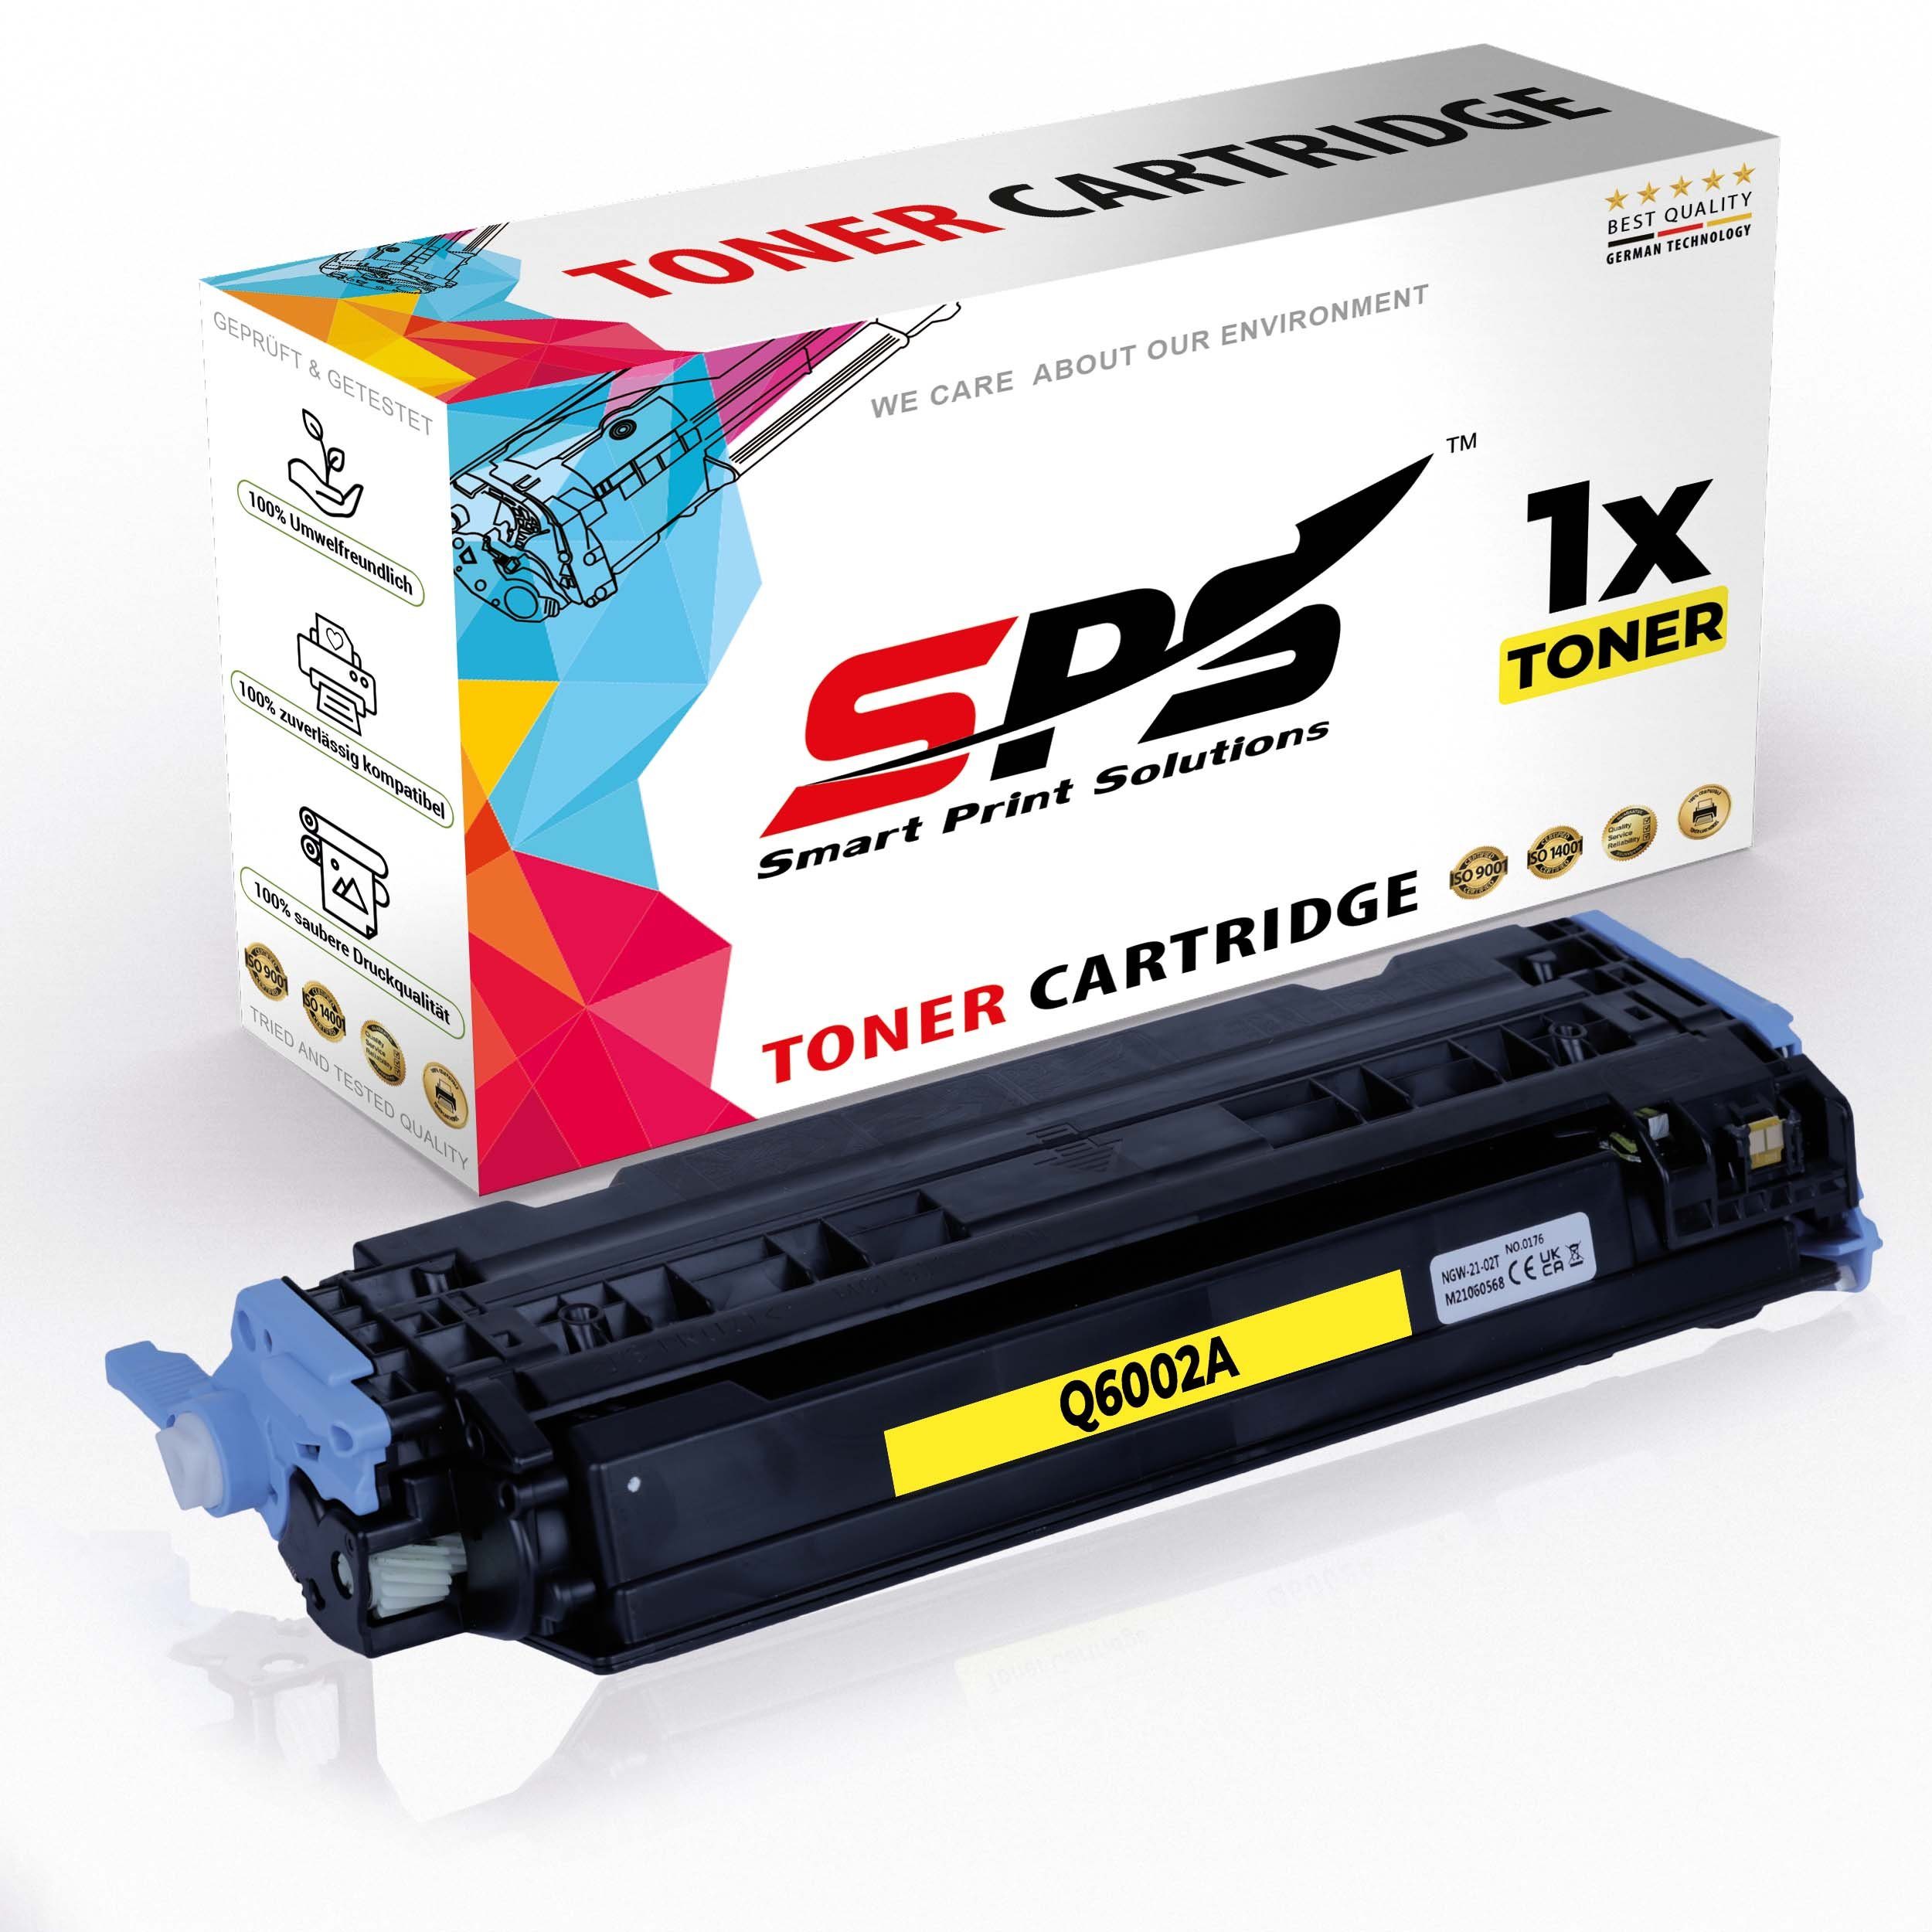 Nachfülltinte HP SPS 124A Pack, CM1015 für MFP (für Kompatibel HP, x) Color Laserjet 1er